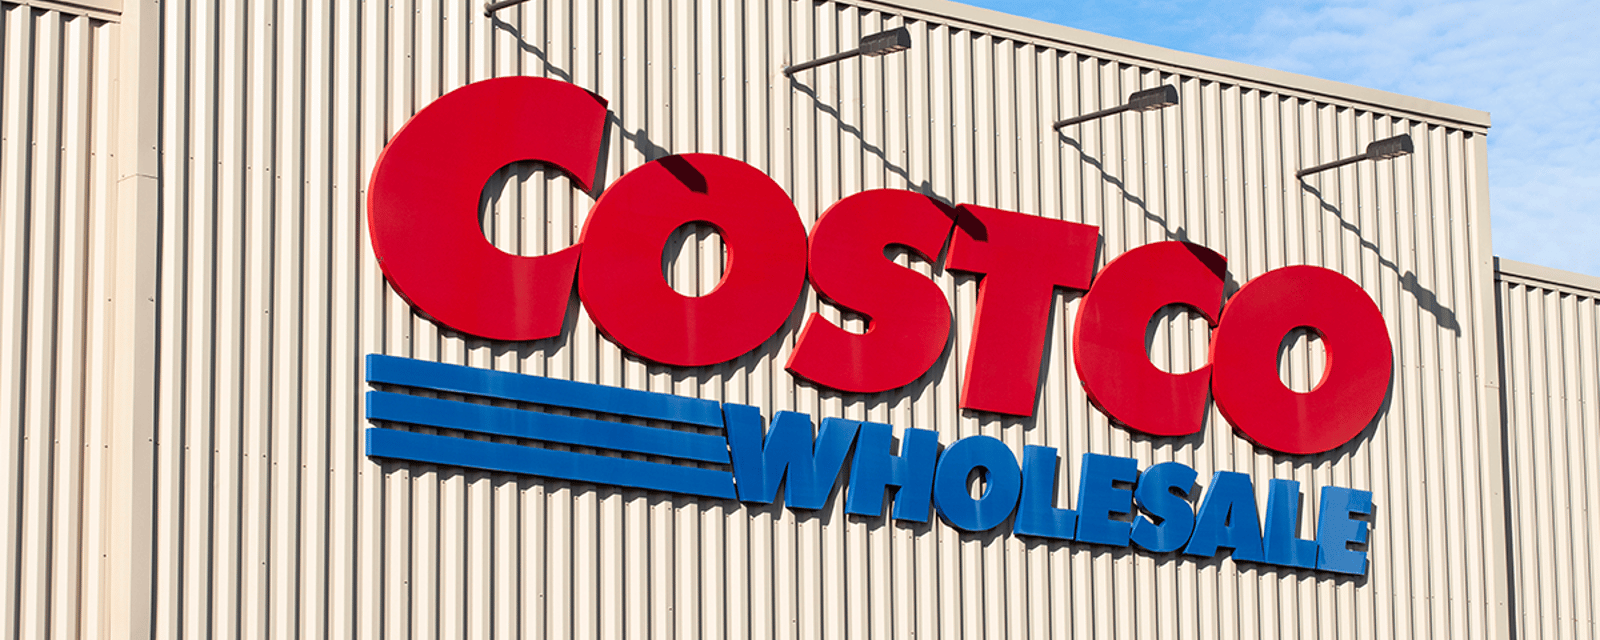 Un dirigeant de Costco fait une déclaration importante sur l'inflation